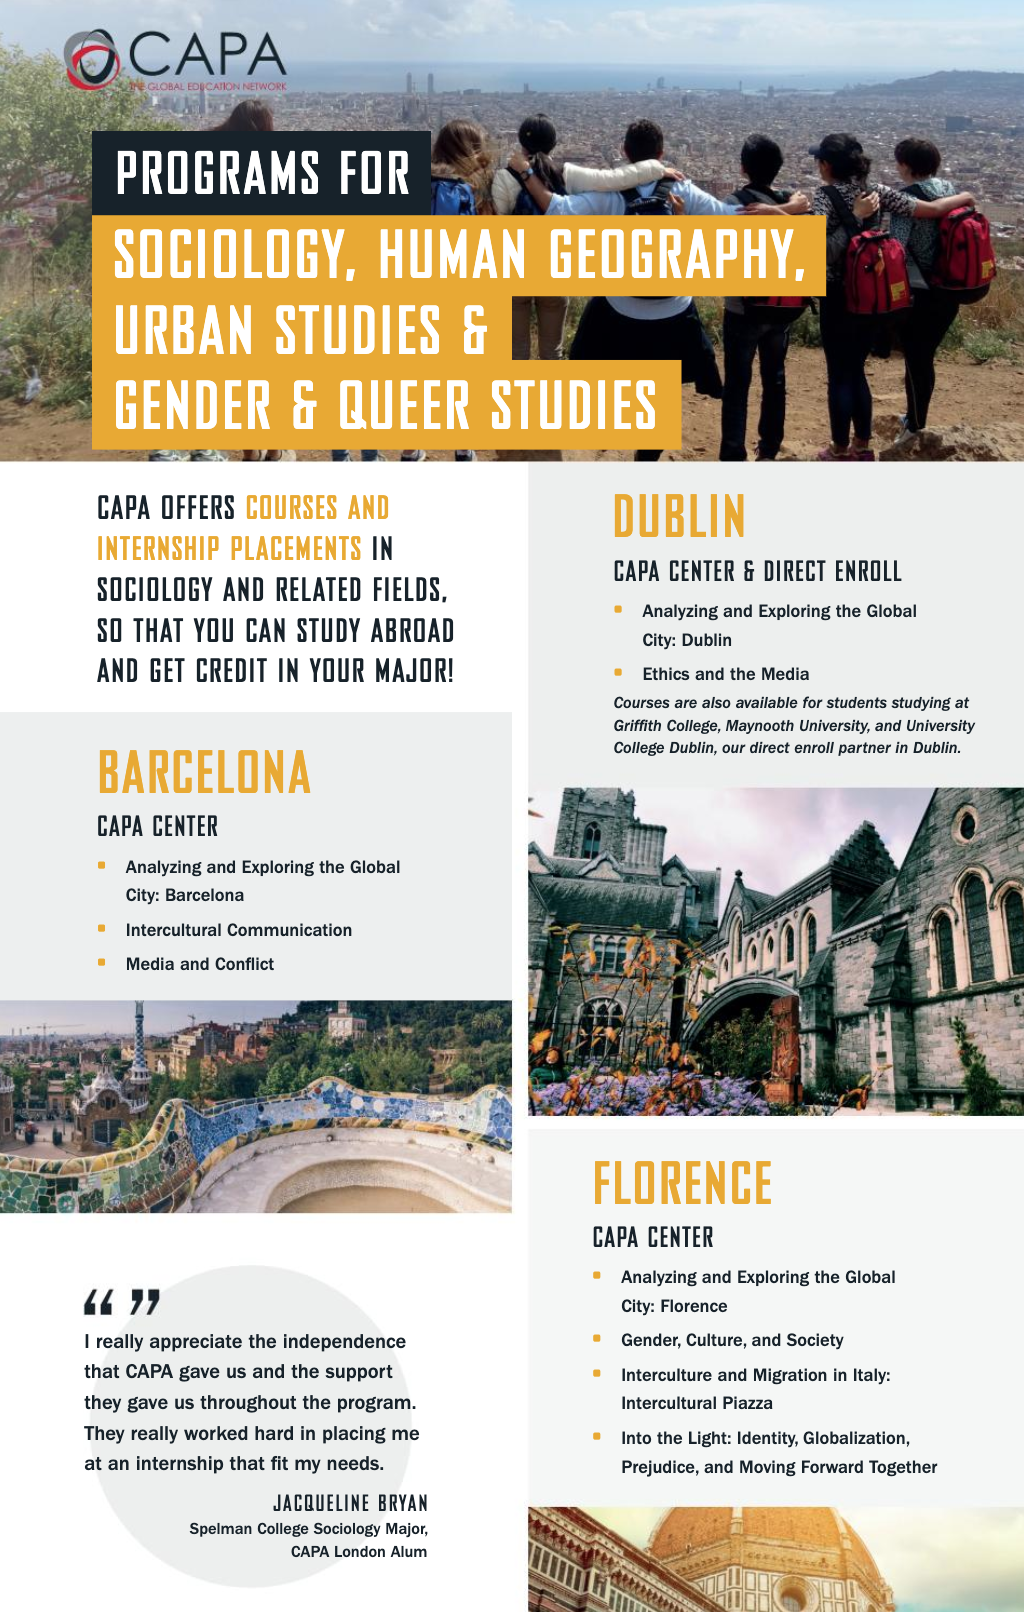 Sociology, Human Geography, Urban Studies, Gender & Queer Studies